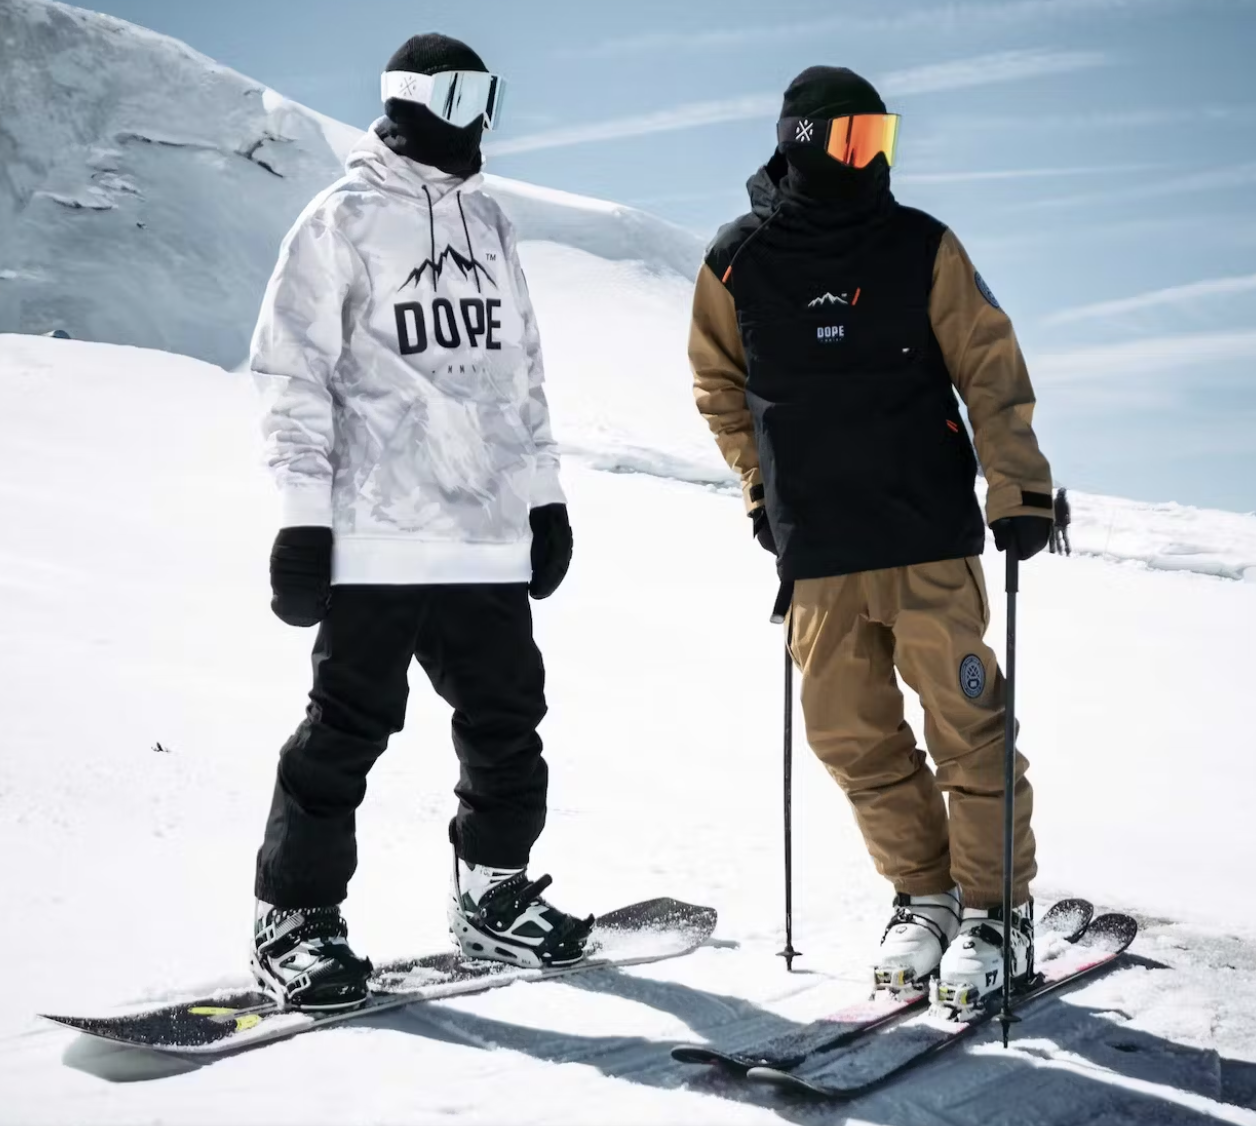 Ski und Snowboard